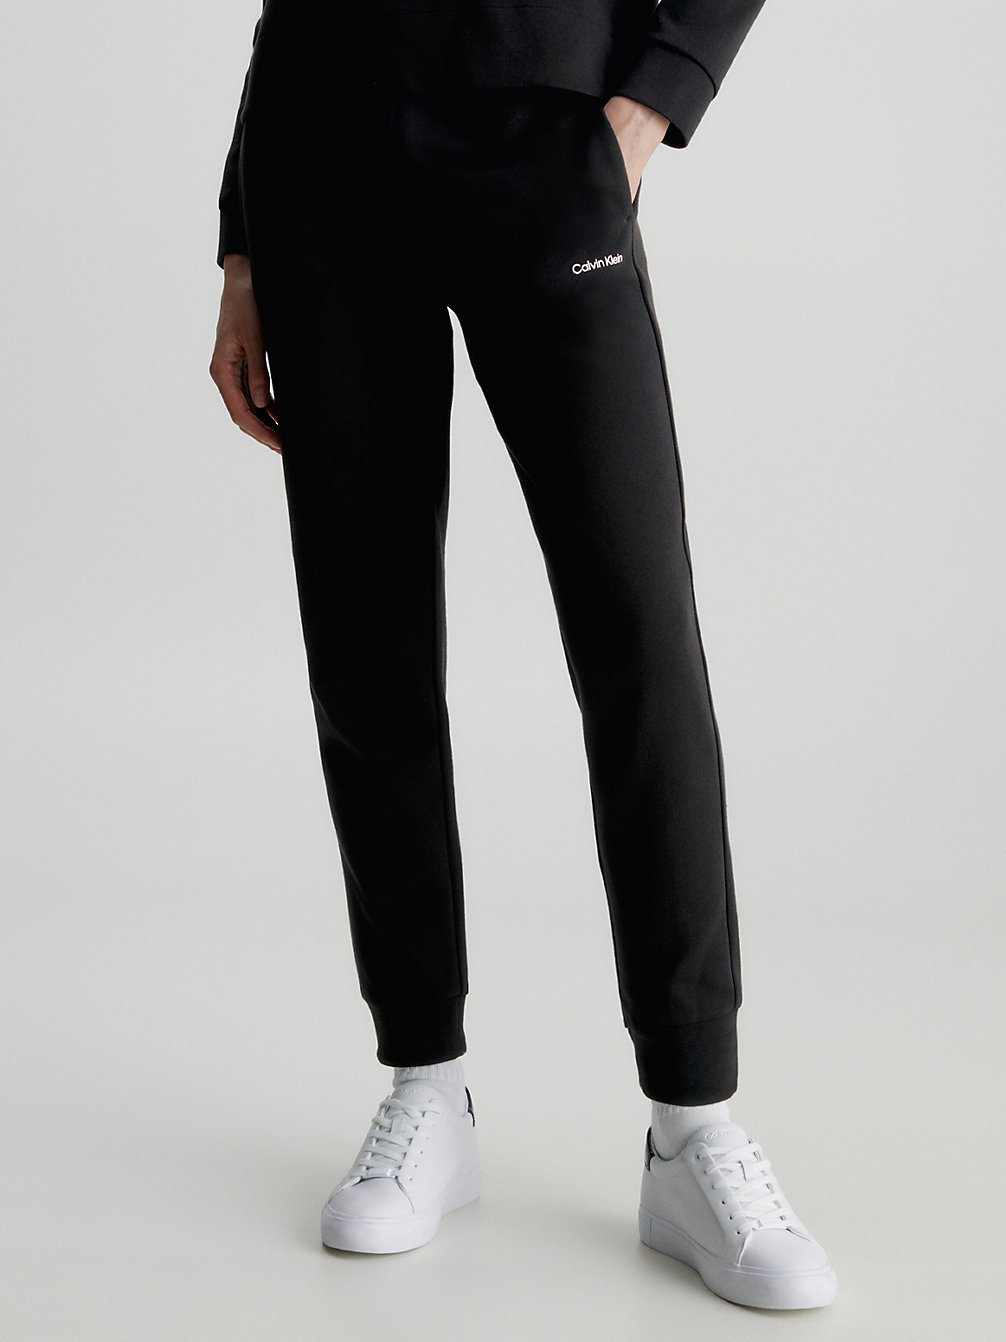 CK BLACK > Wąskie Spodnie Dresowe Z Małym Logo > undefined Kobiety - Calvin Klein